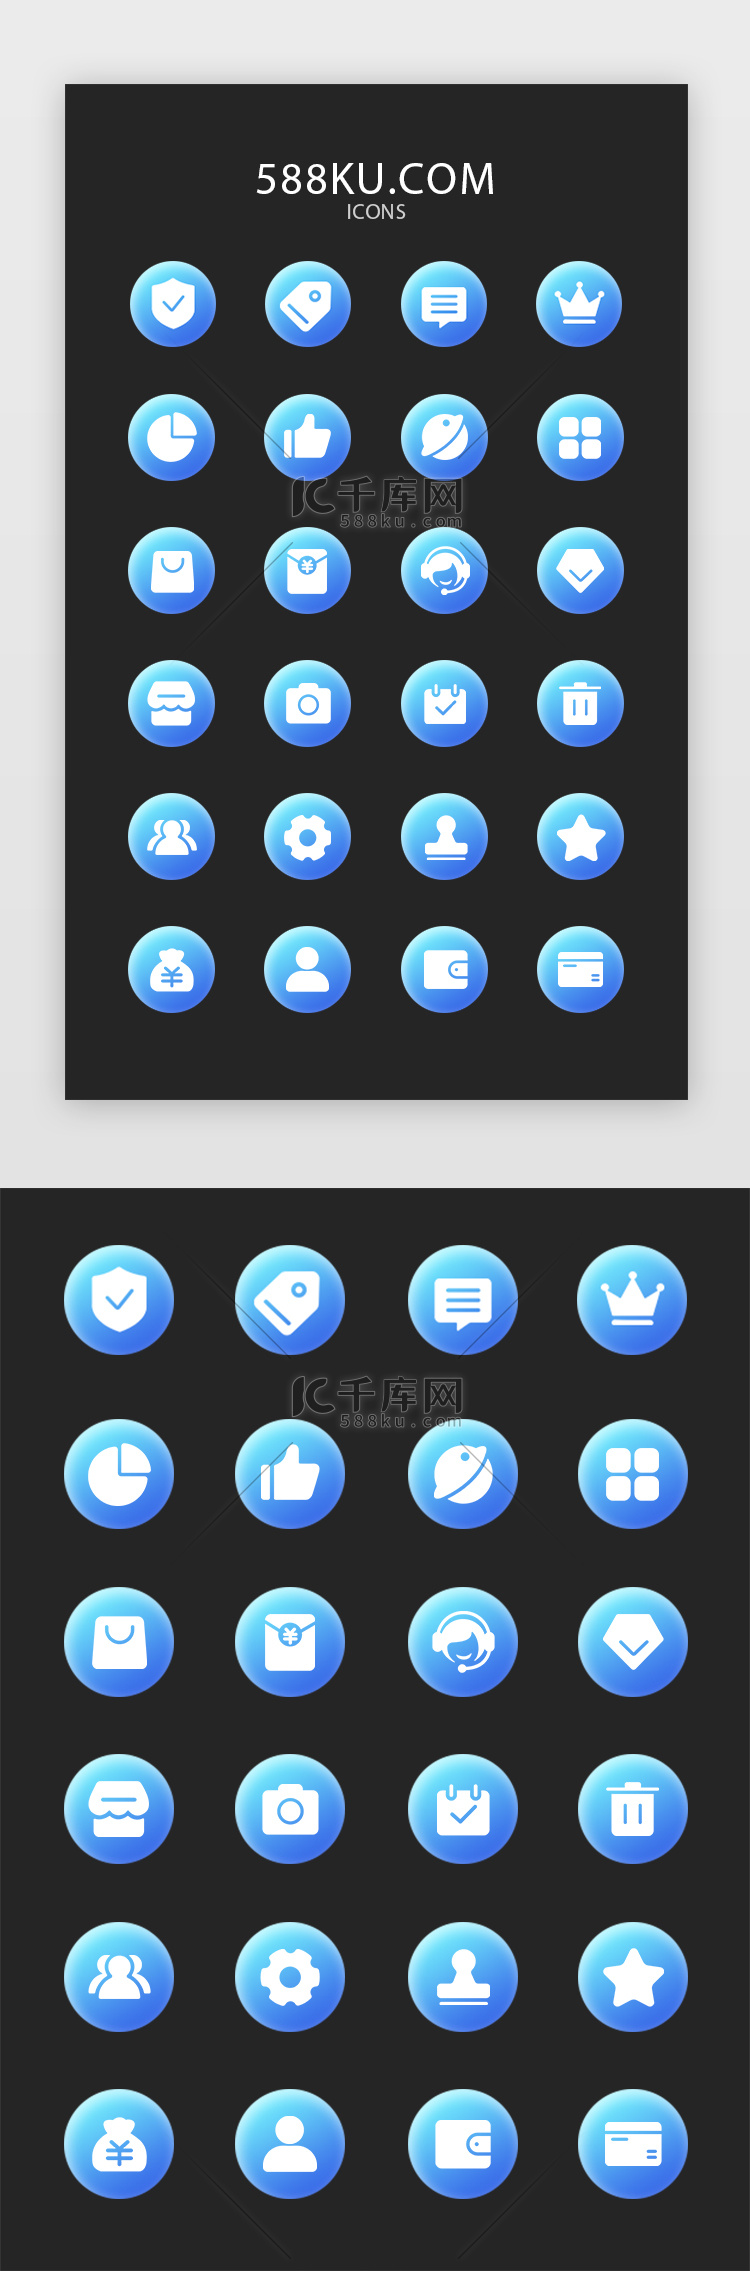 蓝色渐变电商小程序常用矢量icon图标